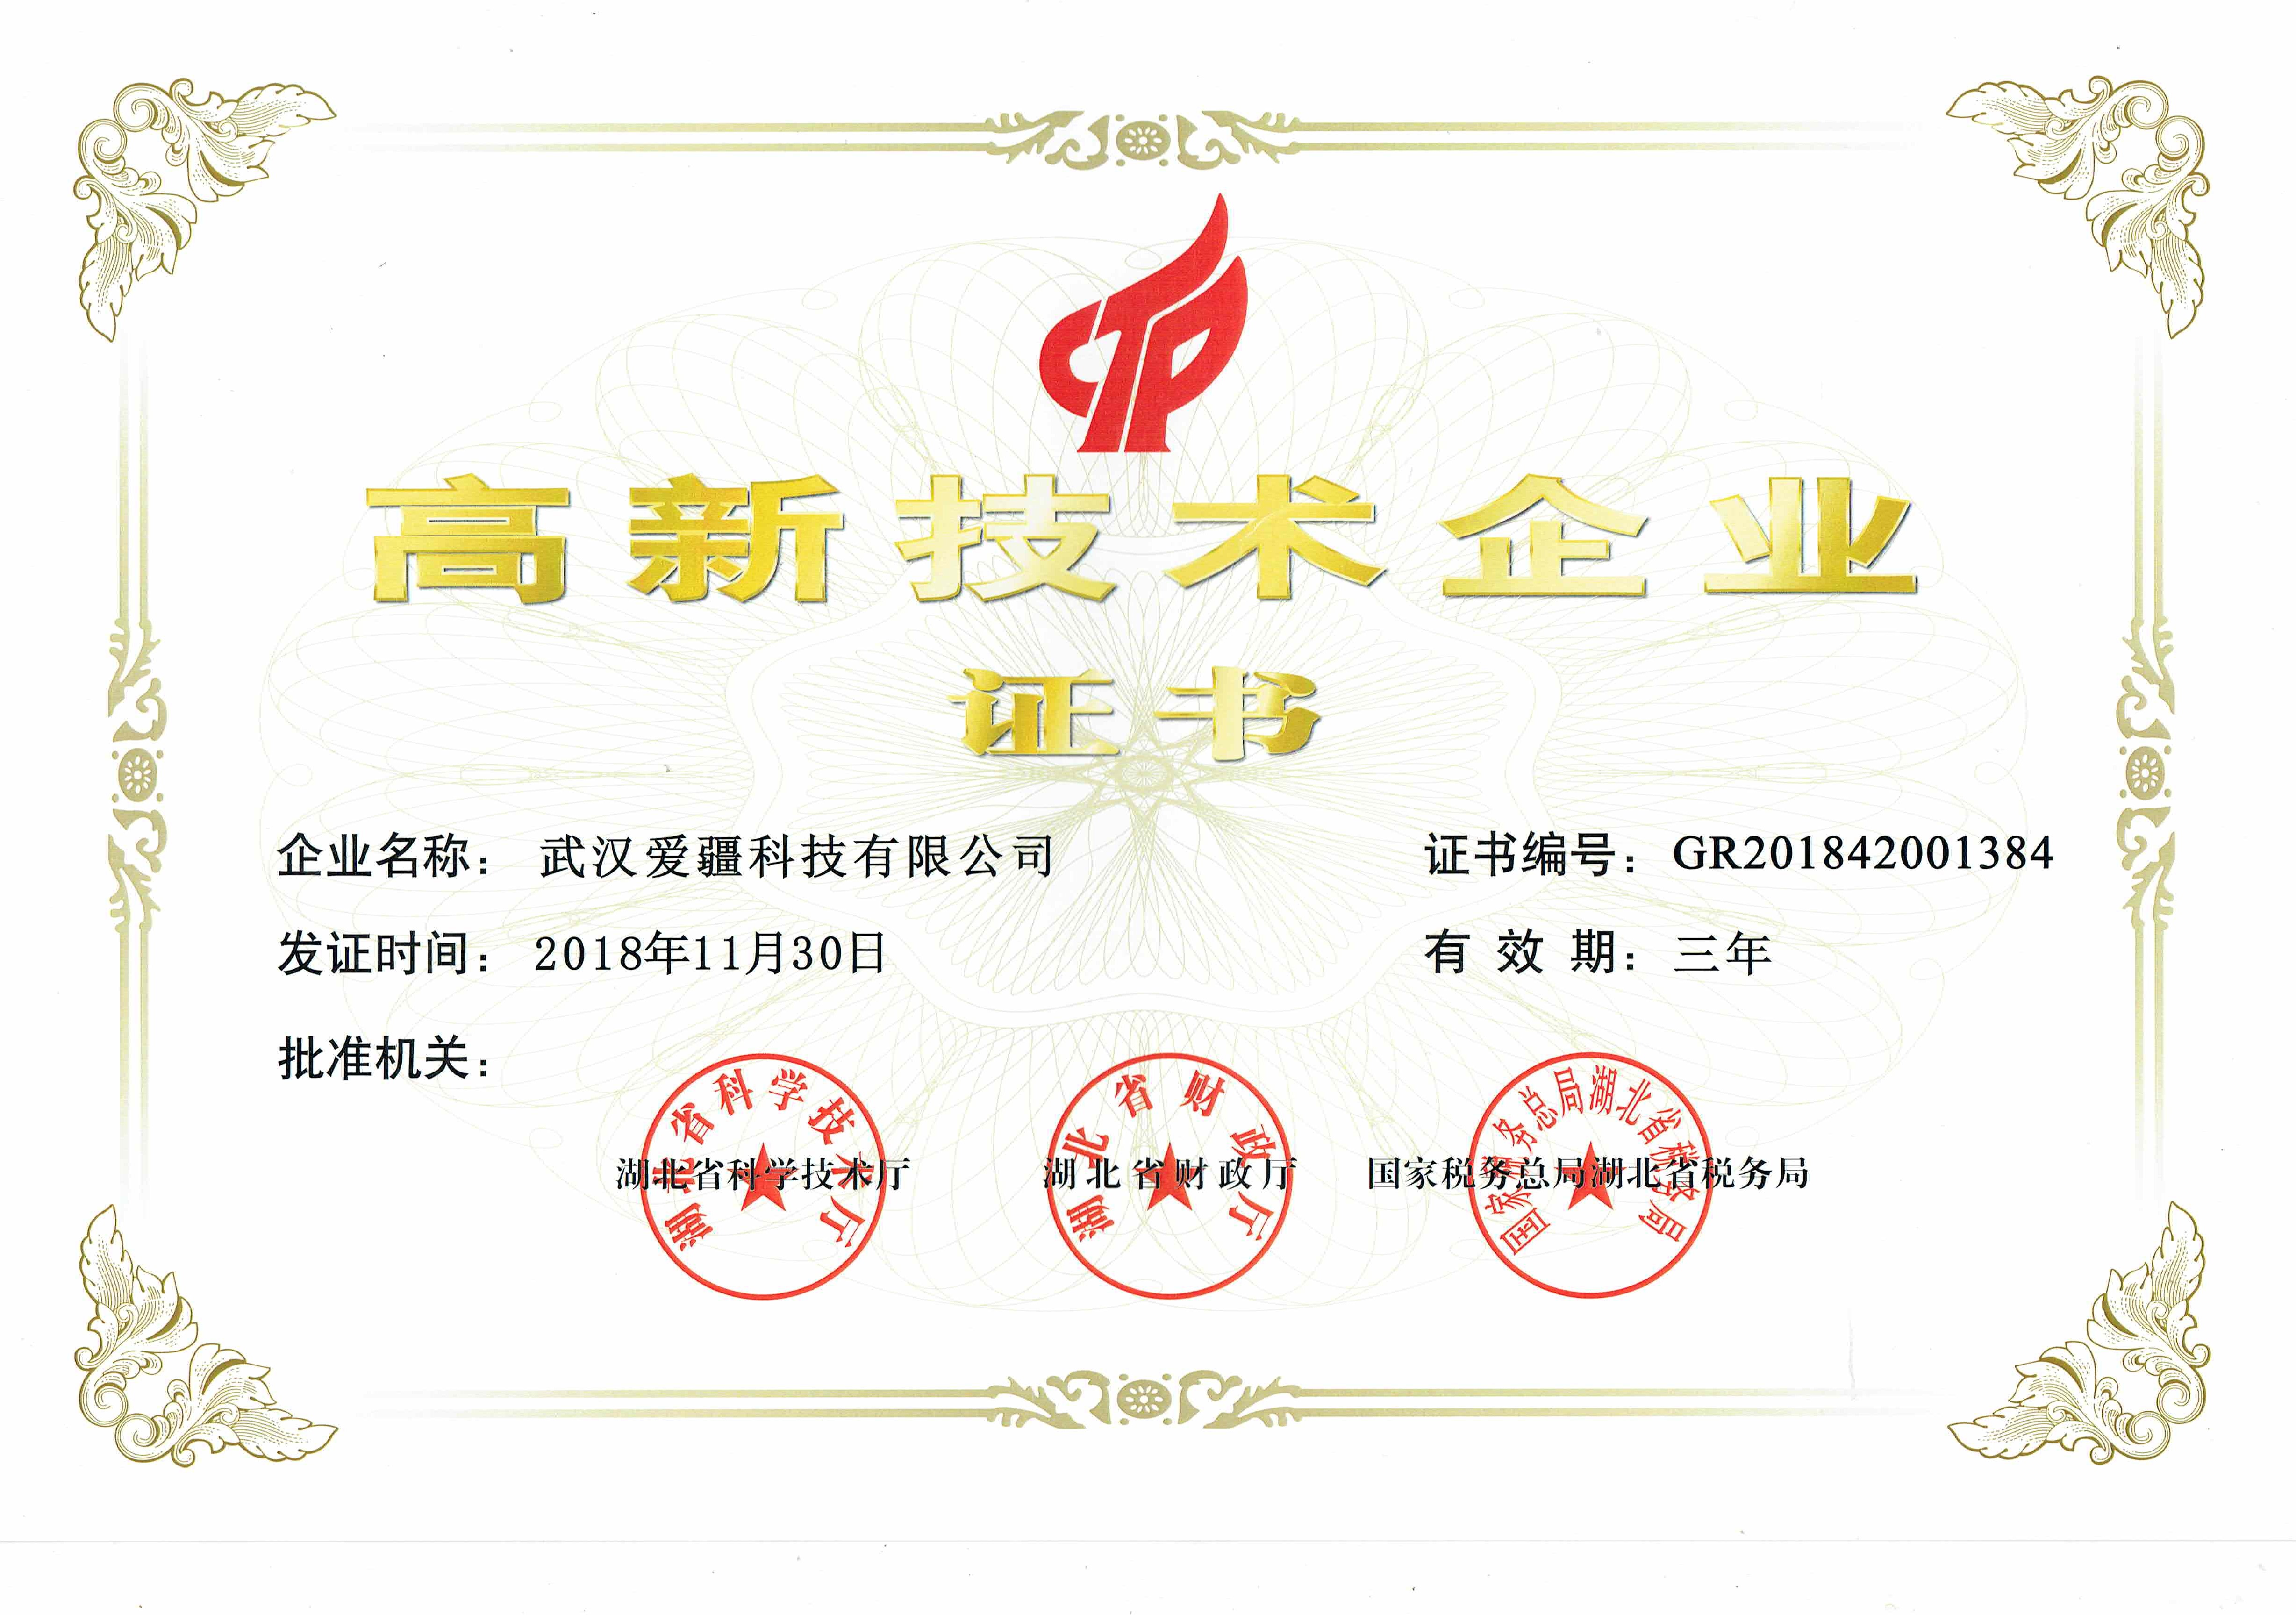 泰州武汉爱疆科技获得 高新技术企业 认证